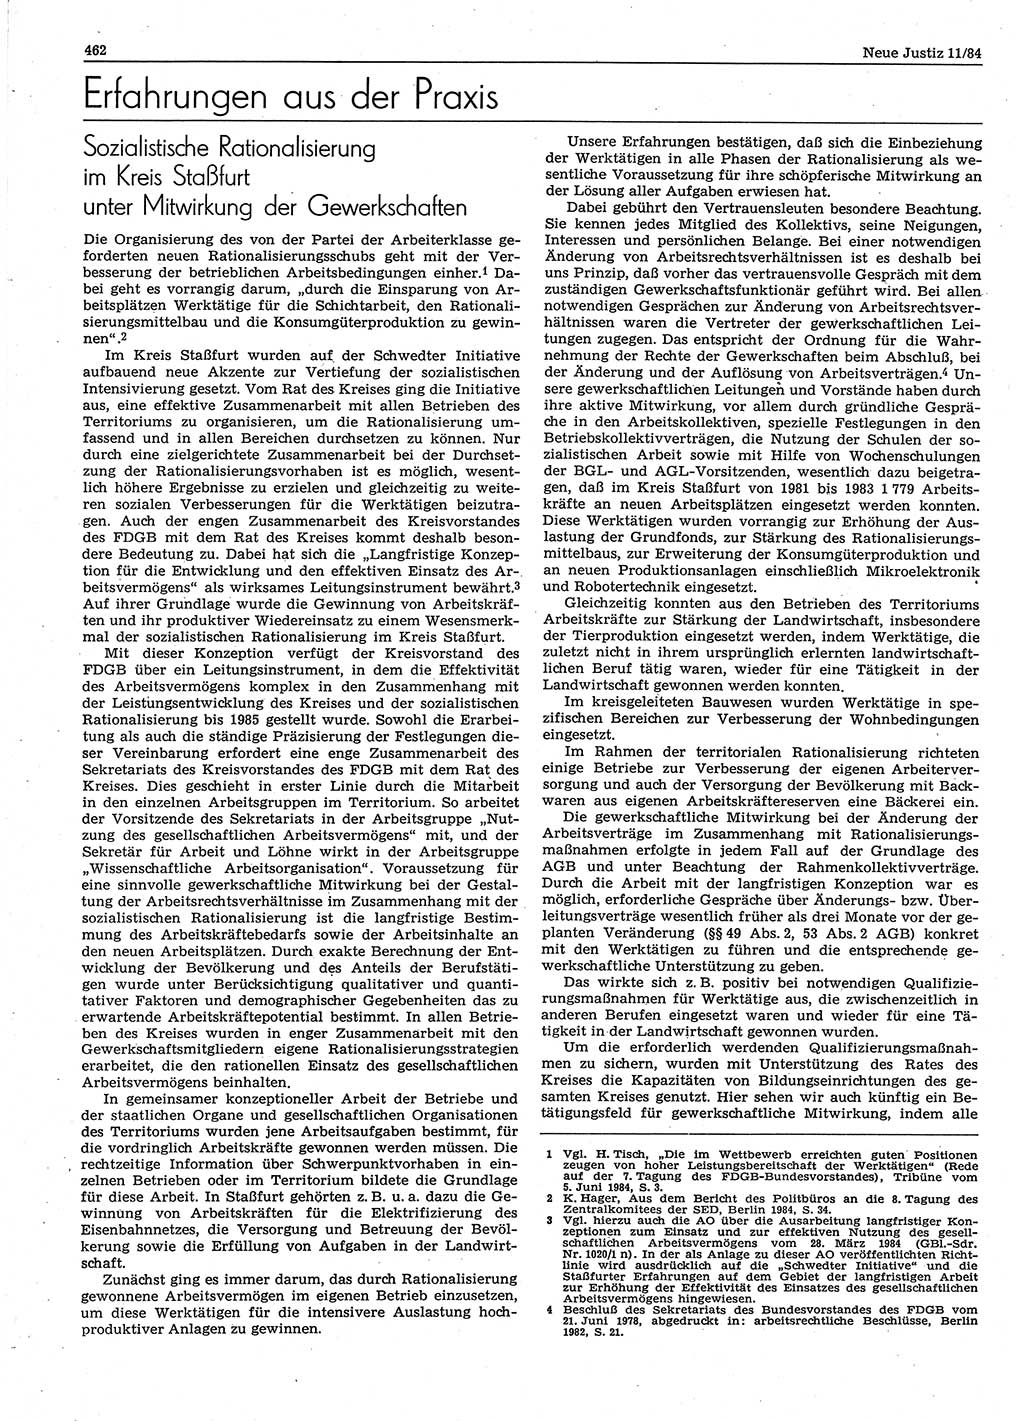 Neue Justiz (NJ), Zeitschrift für sozialistisches Recht und Gesetzlichkeit [Deutsche Demokratische Republik (DDR)], 38. Jahrgang 1984, Seite 462 (NJ DDR 1984, S. 462)